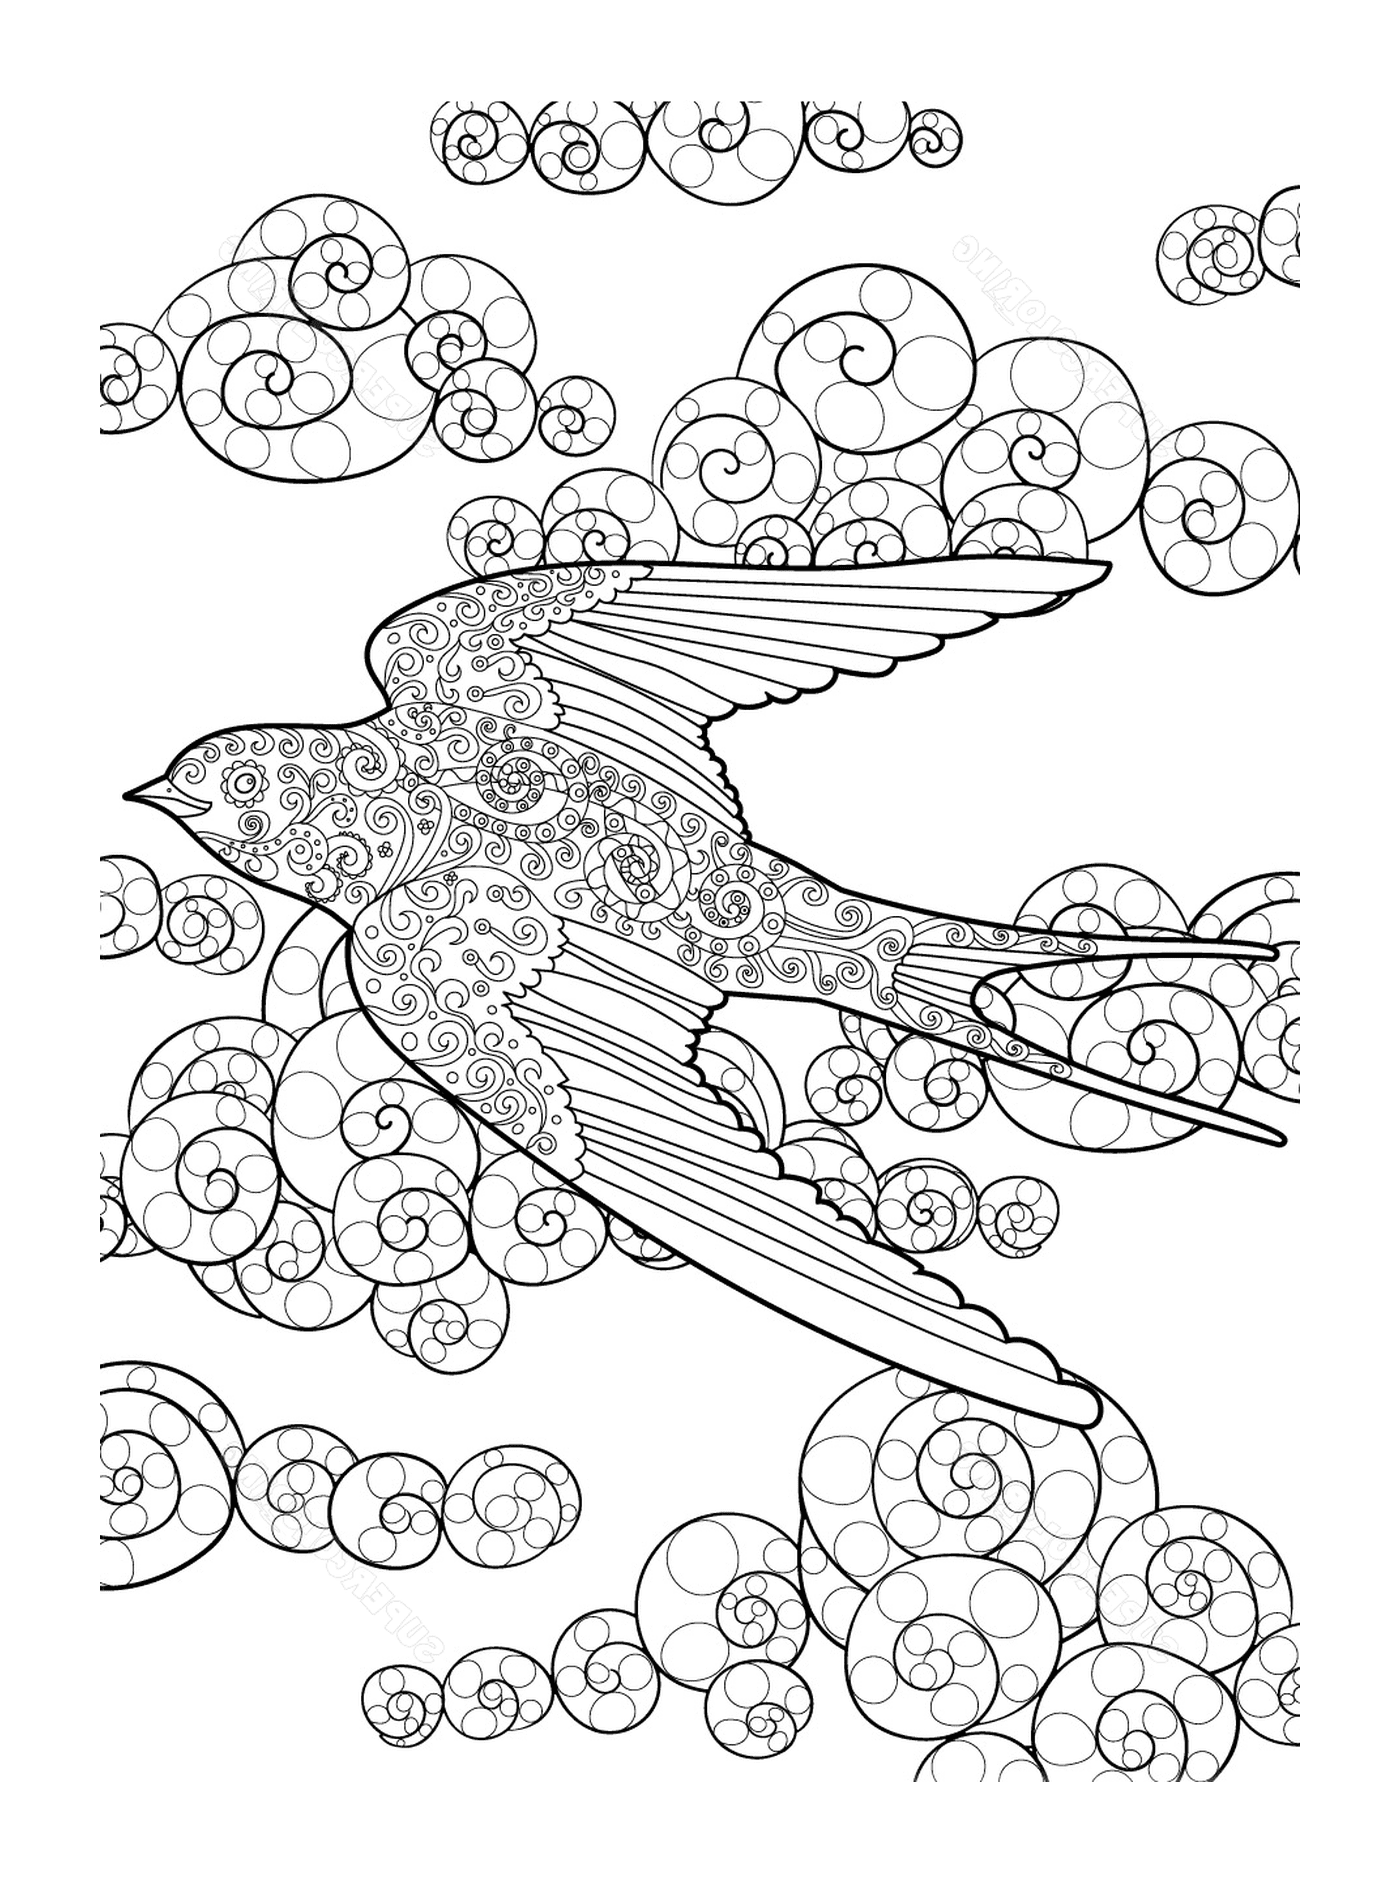  Uccello volante con nuvole vorticose 